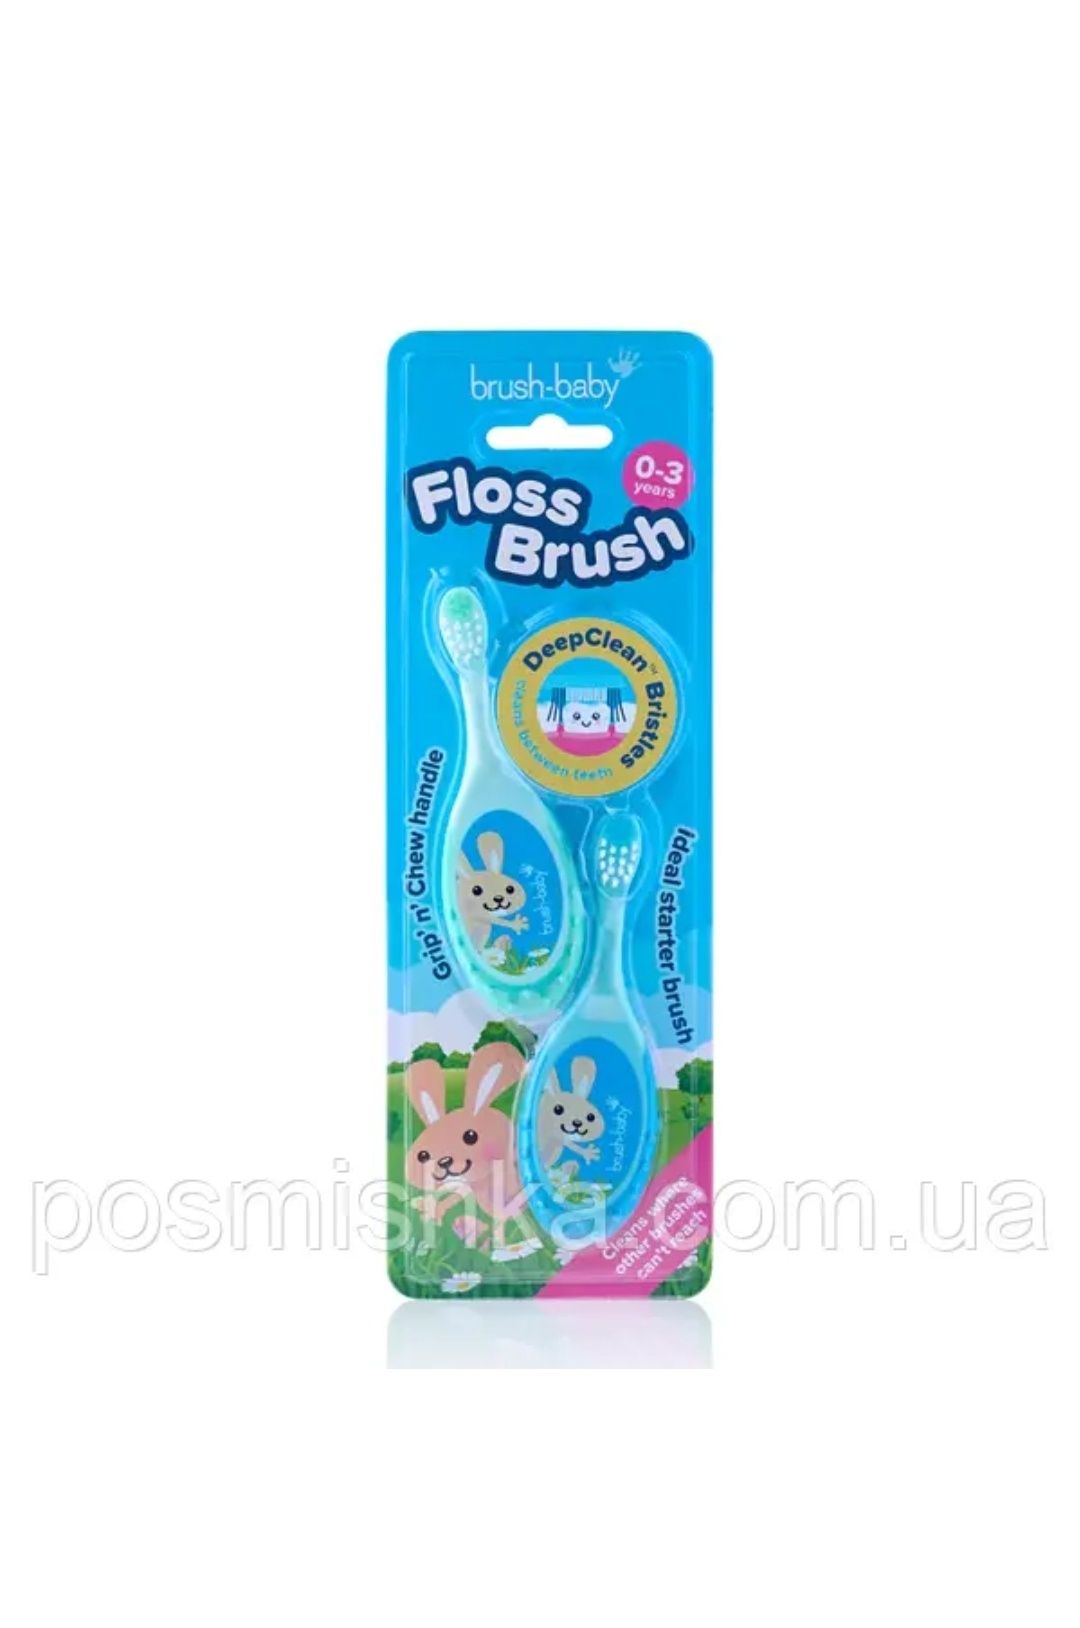 Комплект Brush-Baby Floss Brush